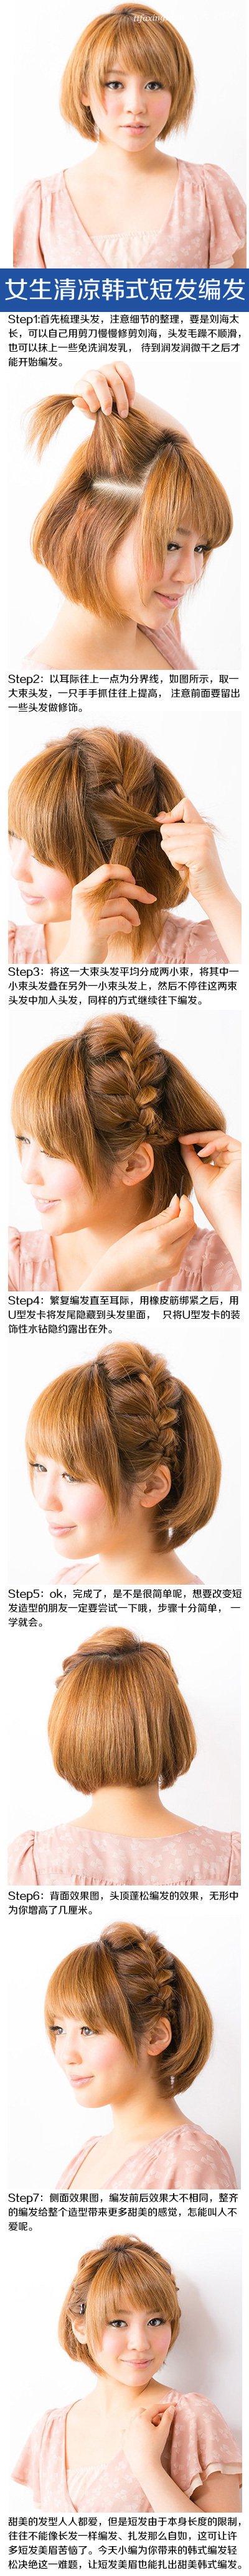 短发女生想要改变造型怎么办？短发女生怎样才能扎出好看的头发？ zaoxingkong.com